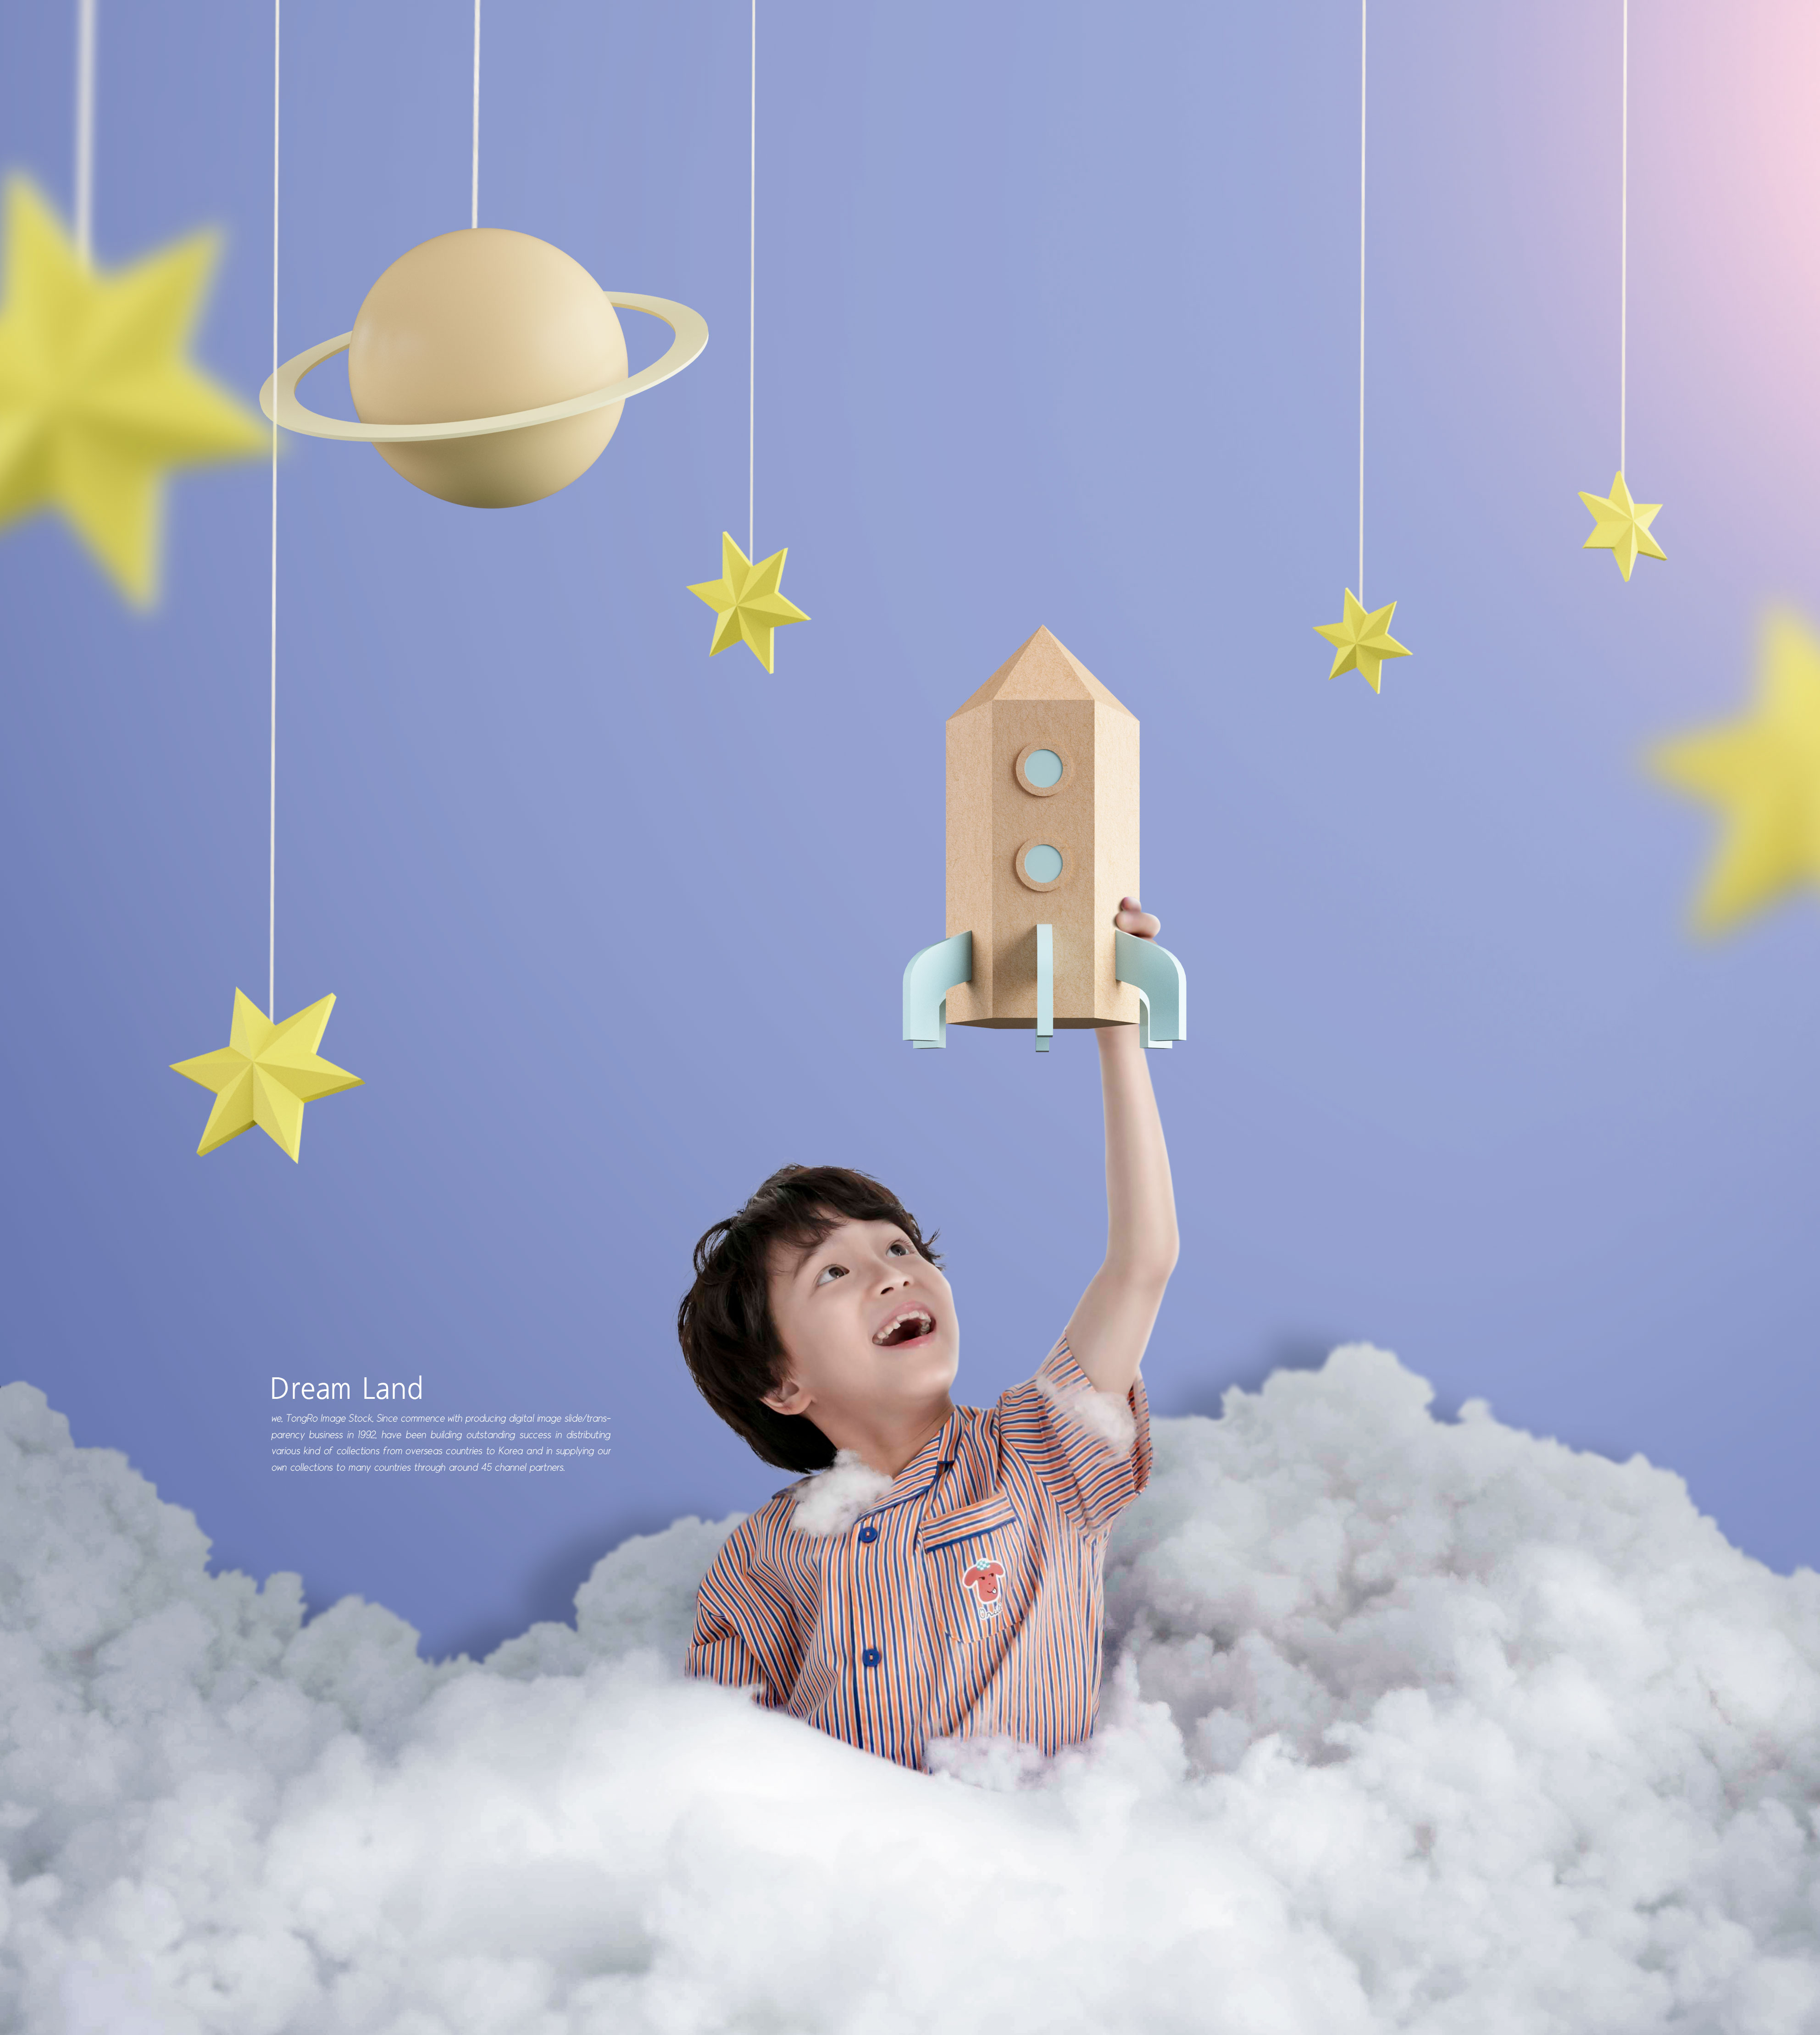 可爱科技元素梦境晚安主题海报设计插图